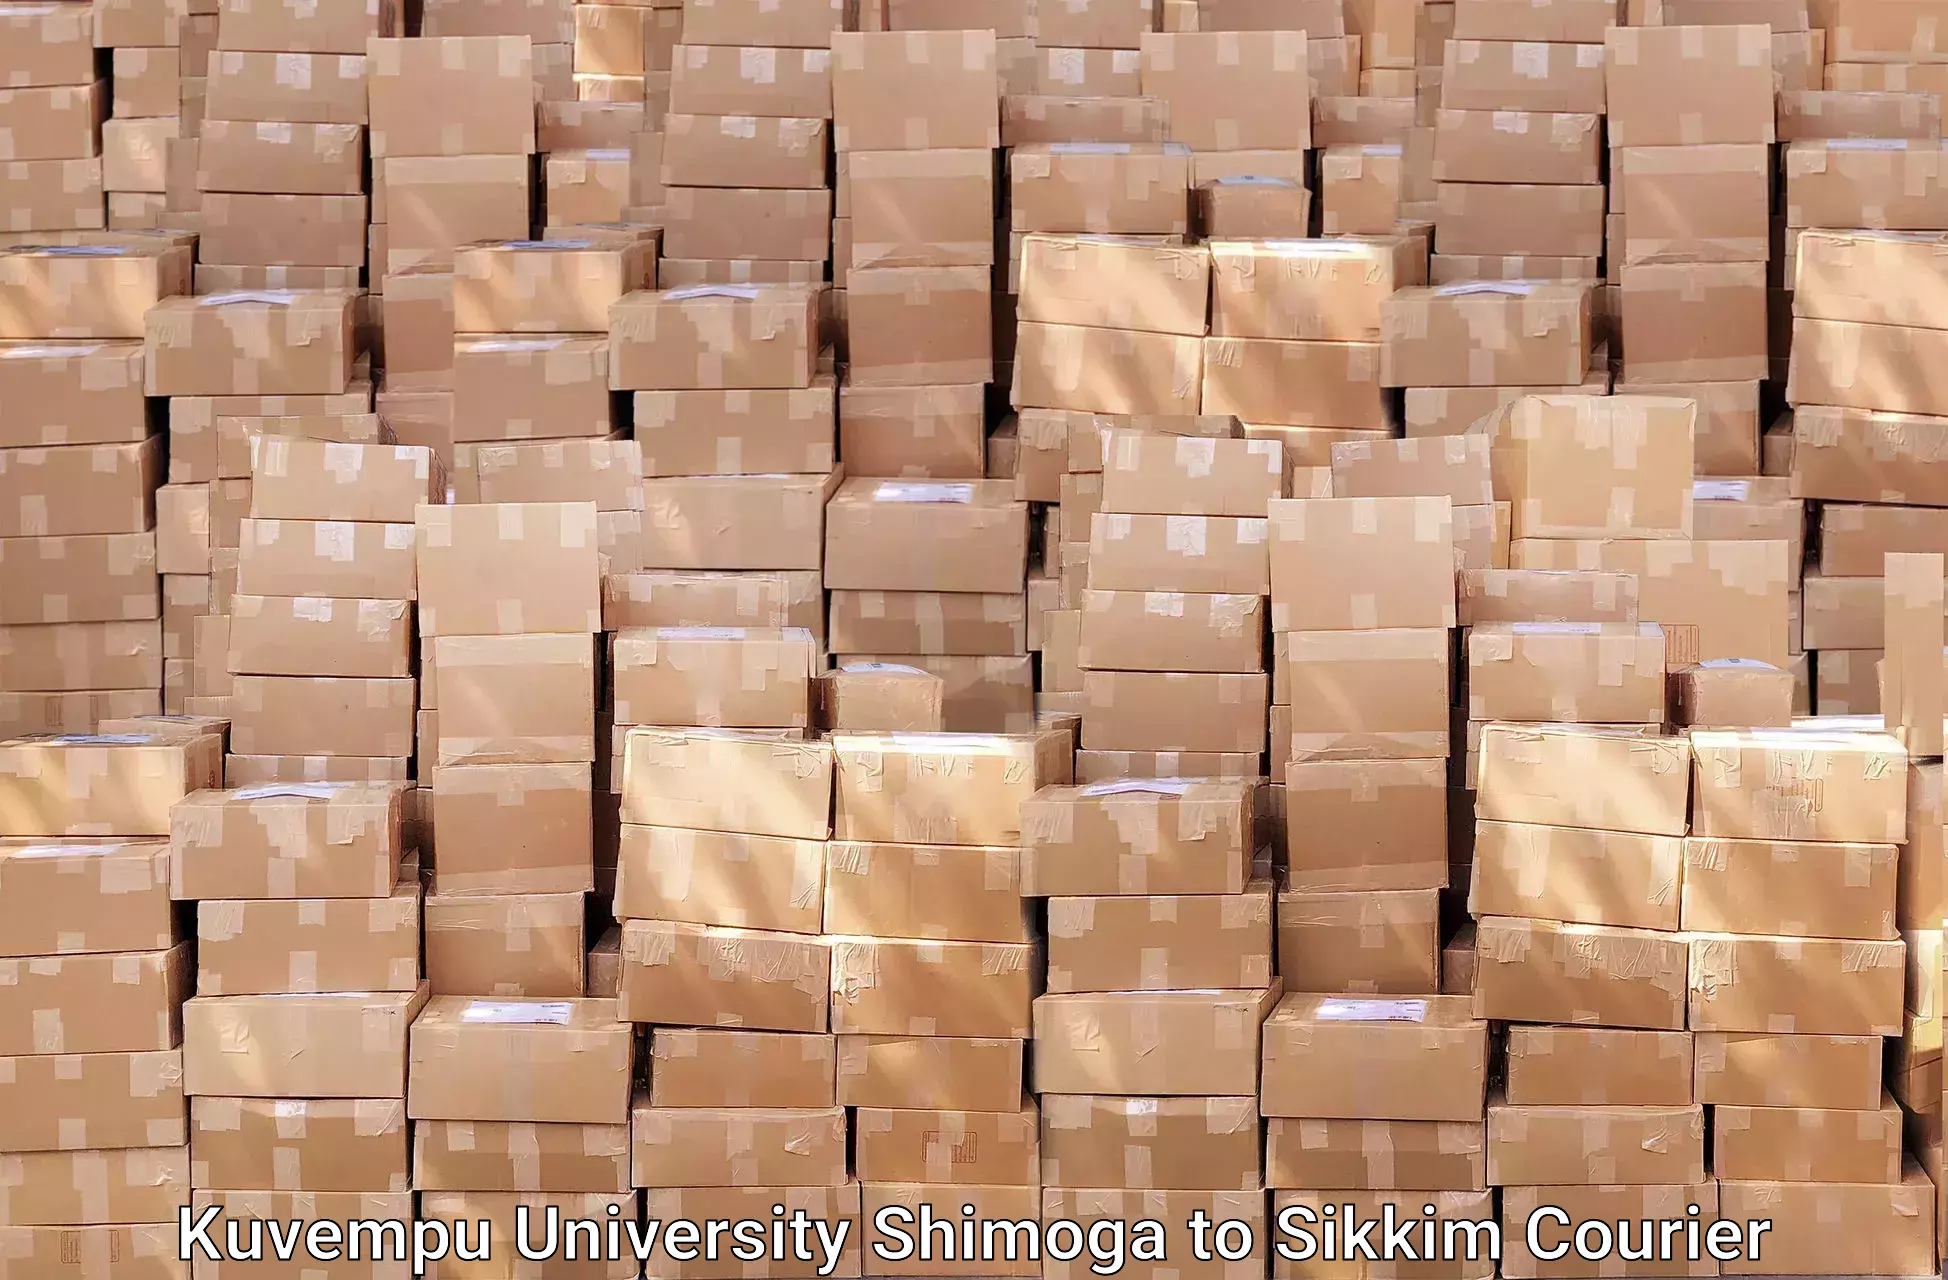 Furniture transport experts Kuvempu University Shimoga to Mangan